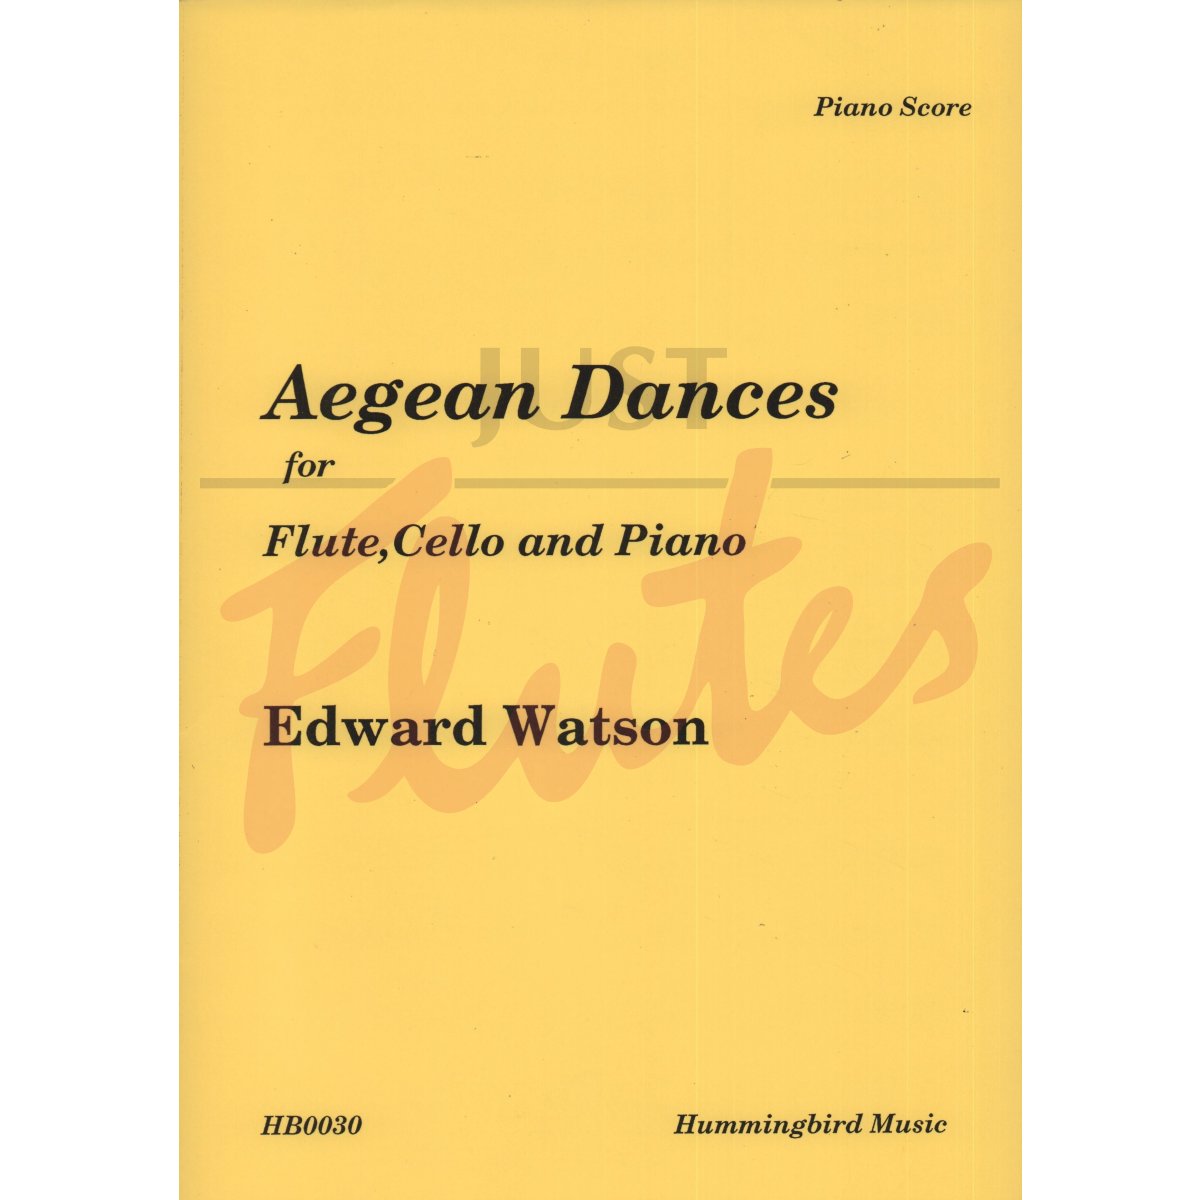 Aegean Dances for Flute, Cello and Piano